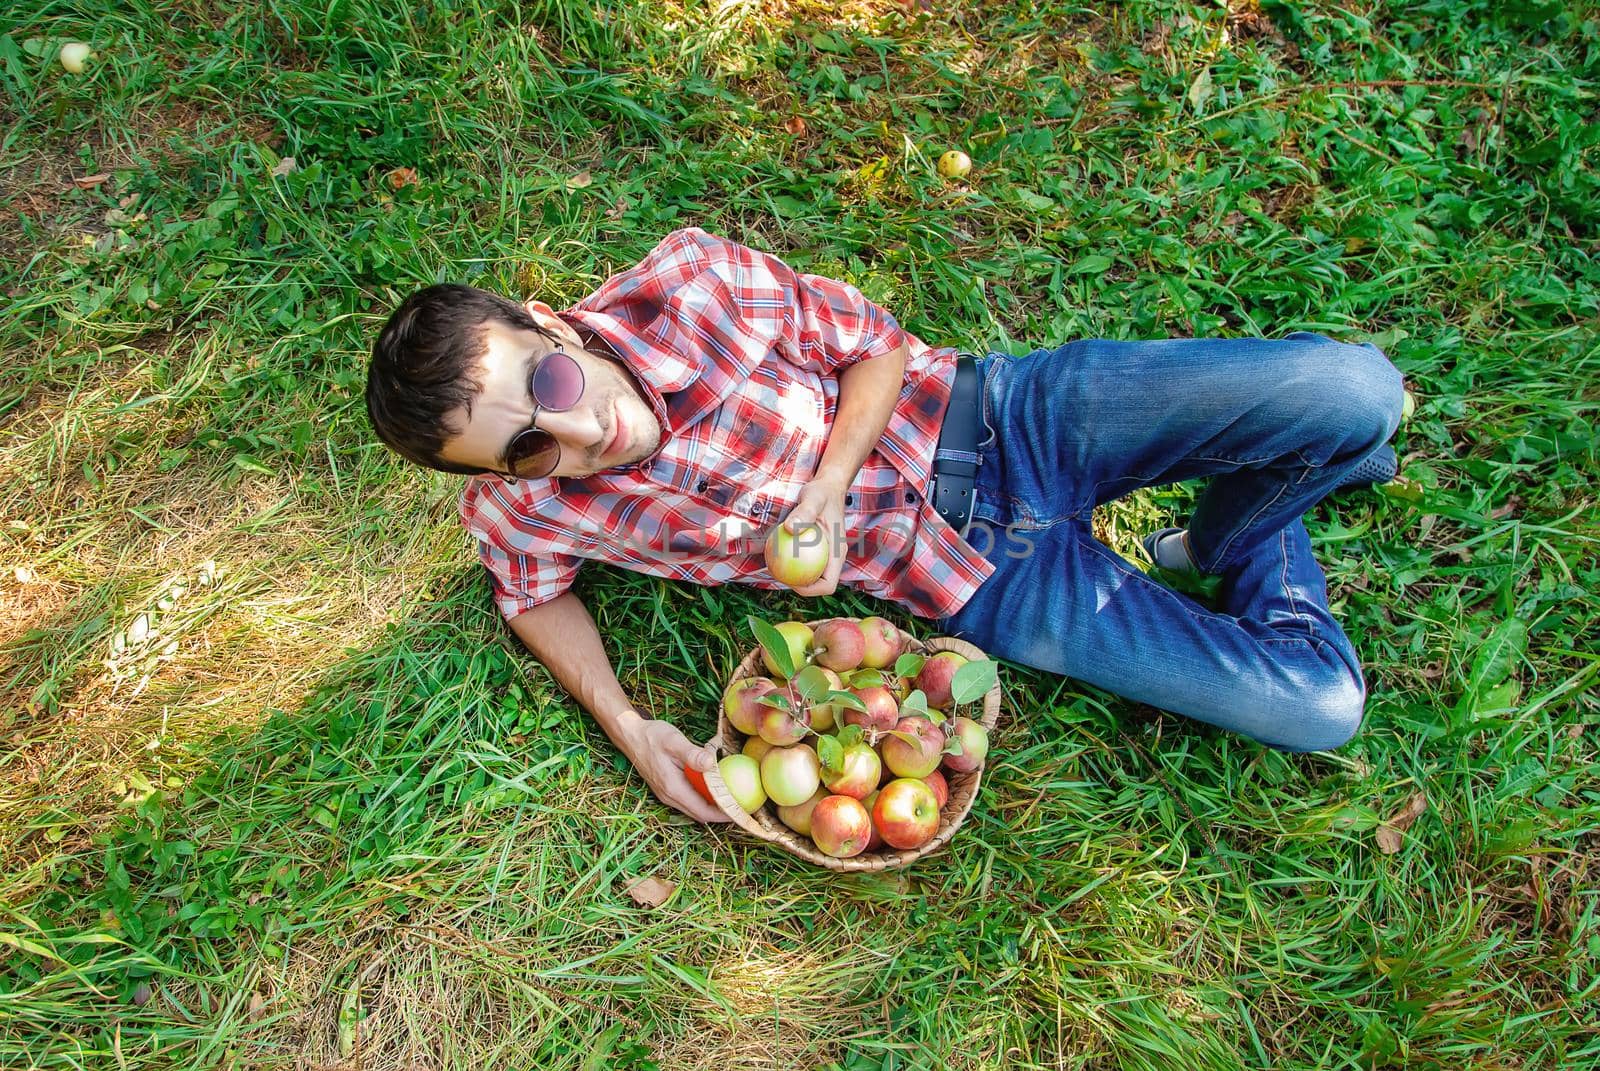 Man gardener picks apples in the garden in the garden. Selective focus.